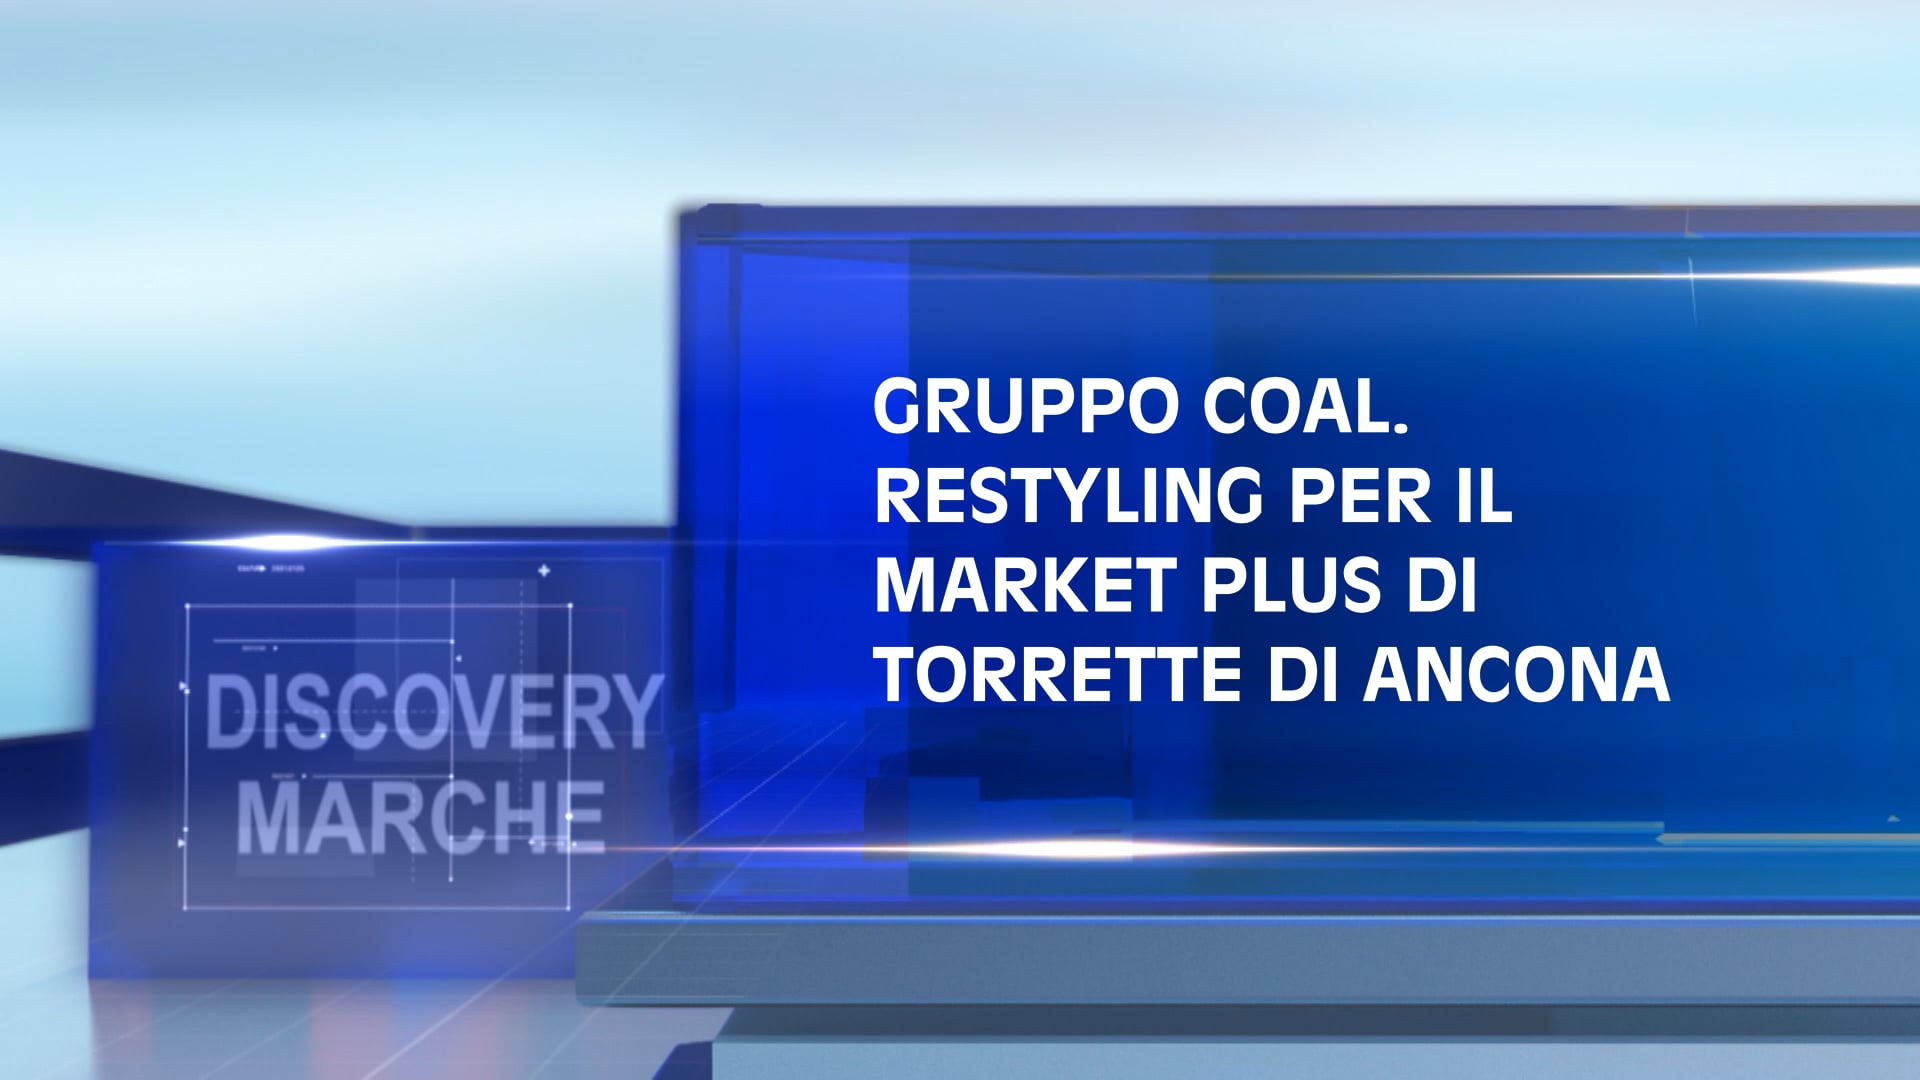 Gruppo Coal. Restyling per il Market Plus di Torrette di Ancona